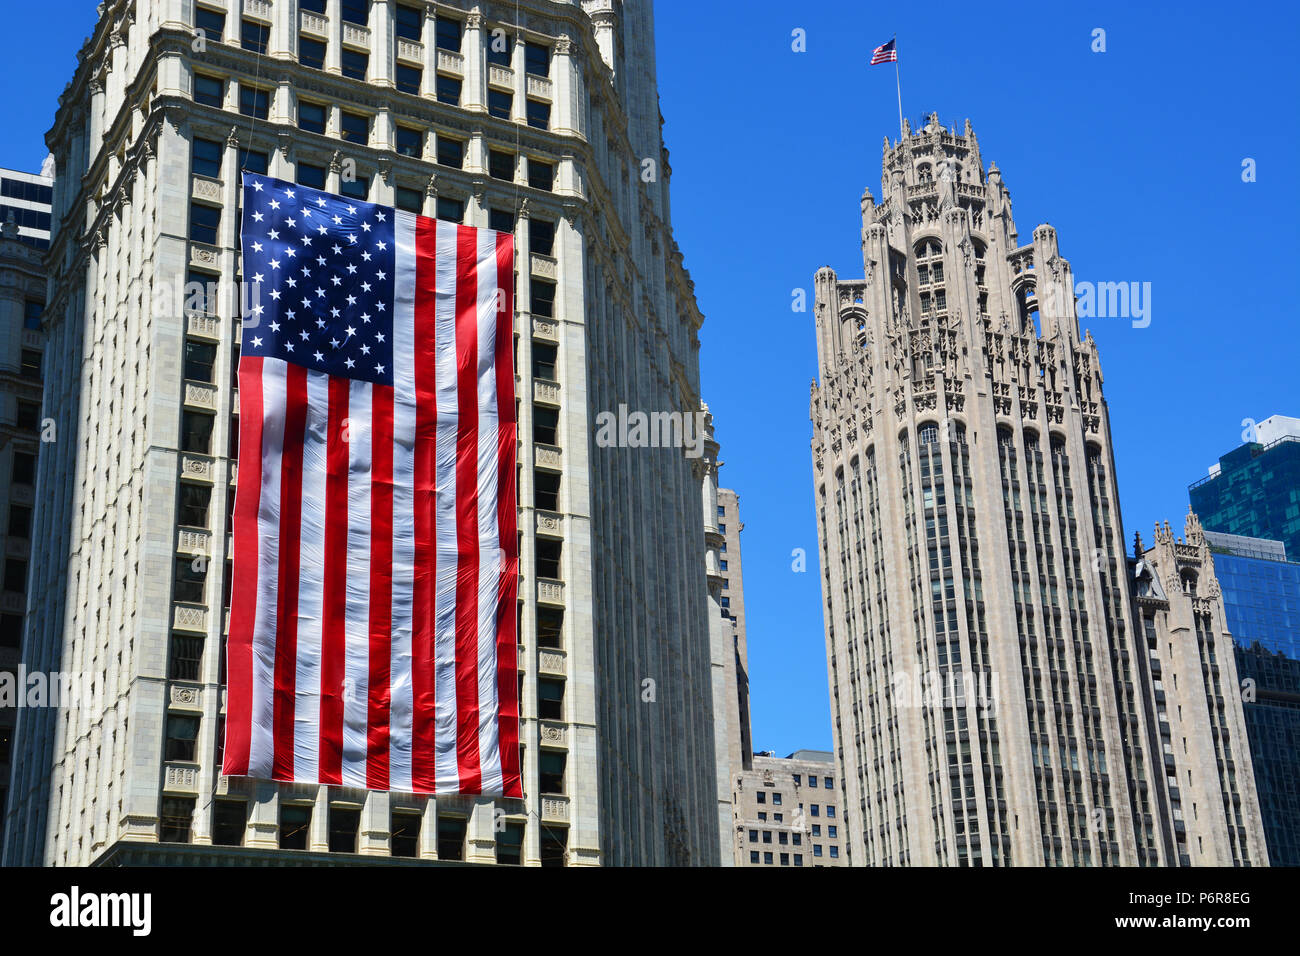 Chicago, Illinois / USA - Juillet 2, 2018 : un drapeau américain de huit étages décore le côté de Chicago Wrigley Building pour le 4 juillet célébrations. Credit : D Guest Smith/Alamy Live News Banque D'Images